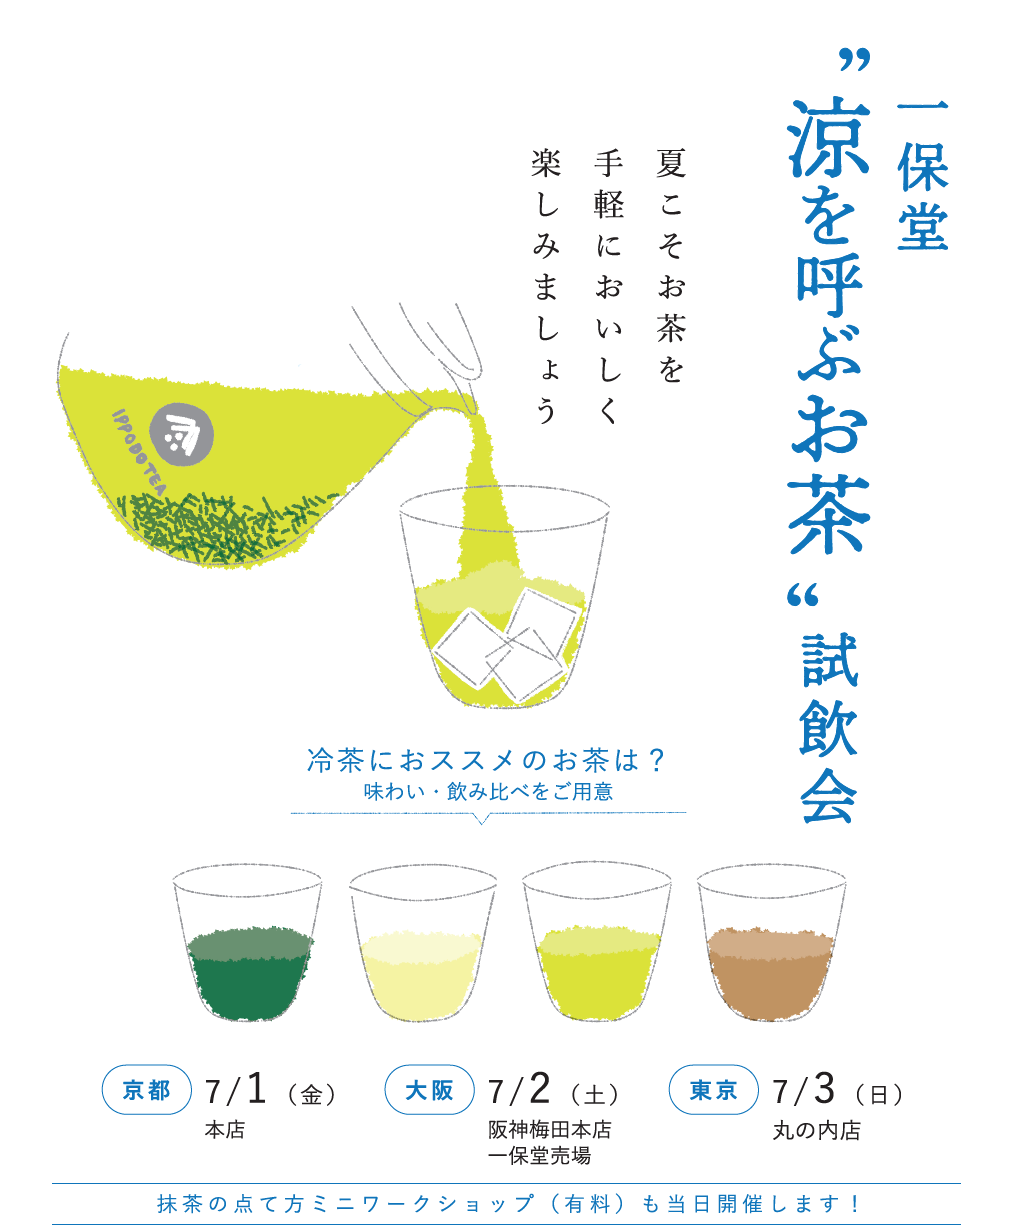 【京都/大阪/東京】夏のお茶 試飲会を開催いたします